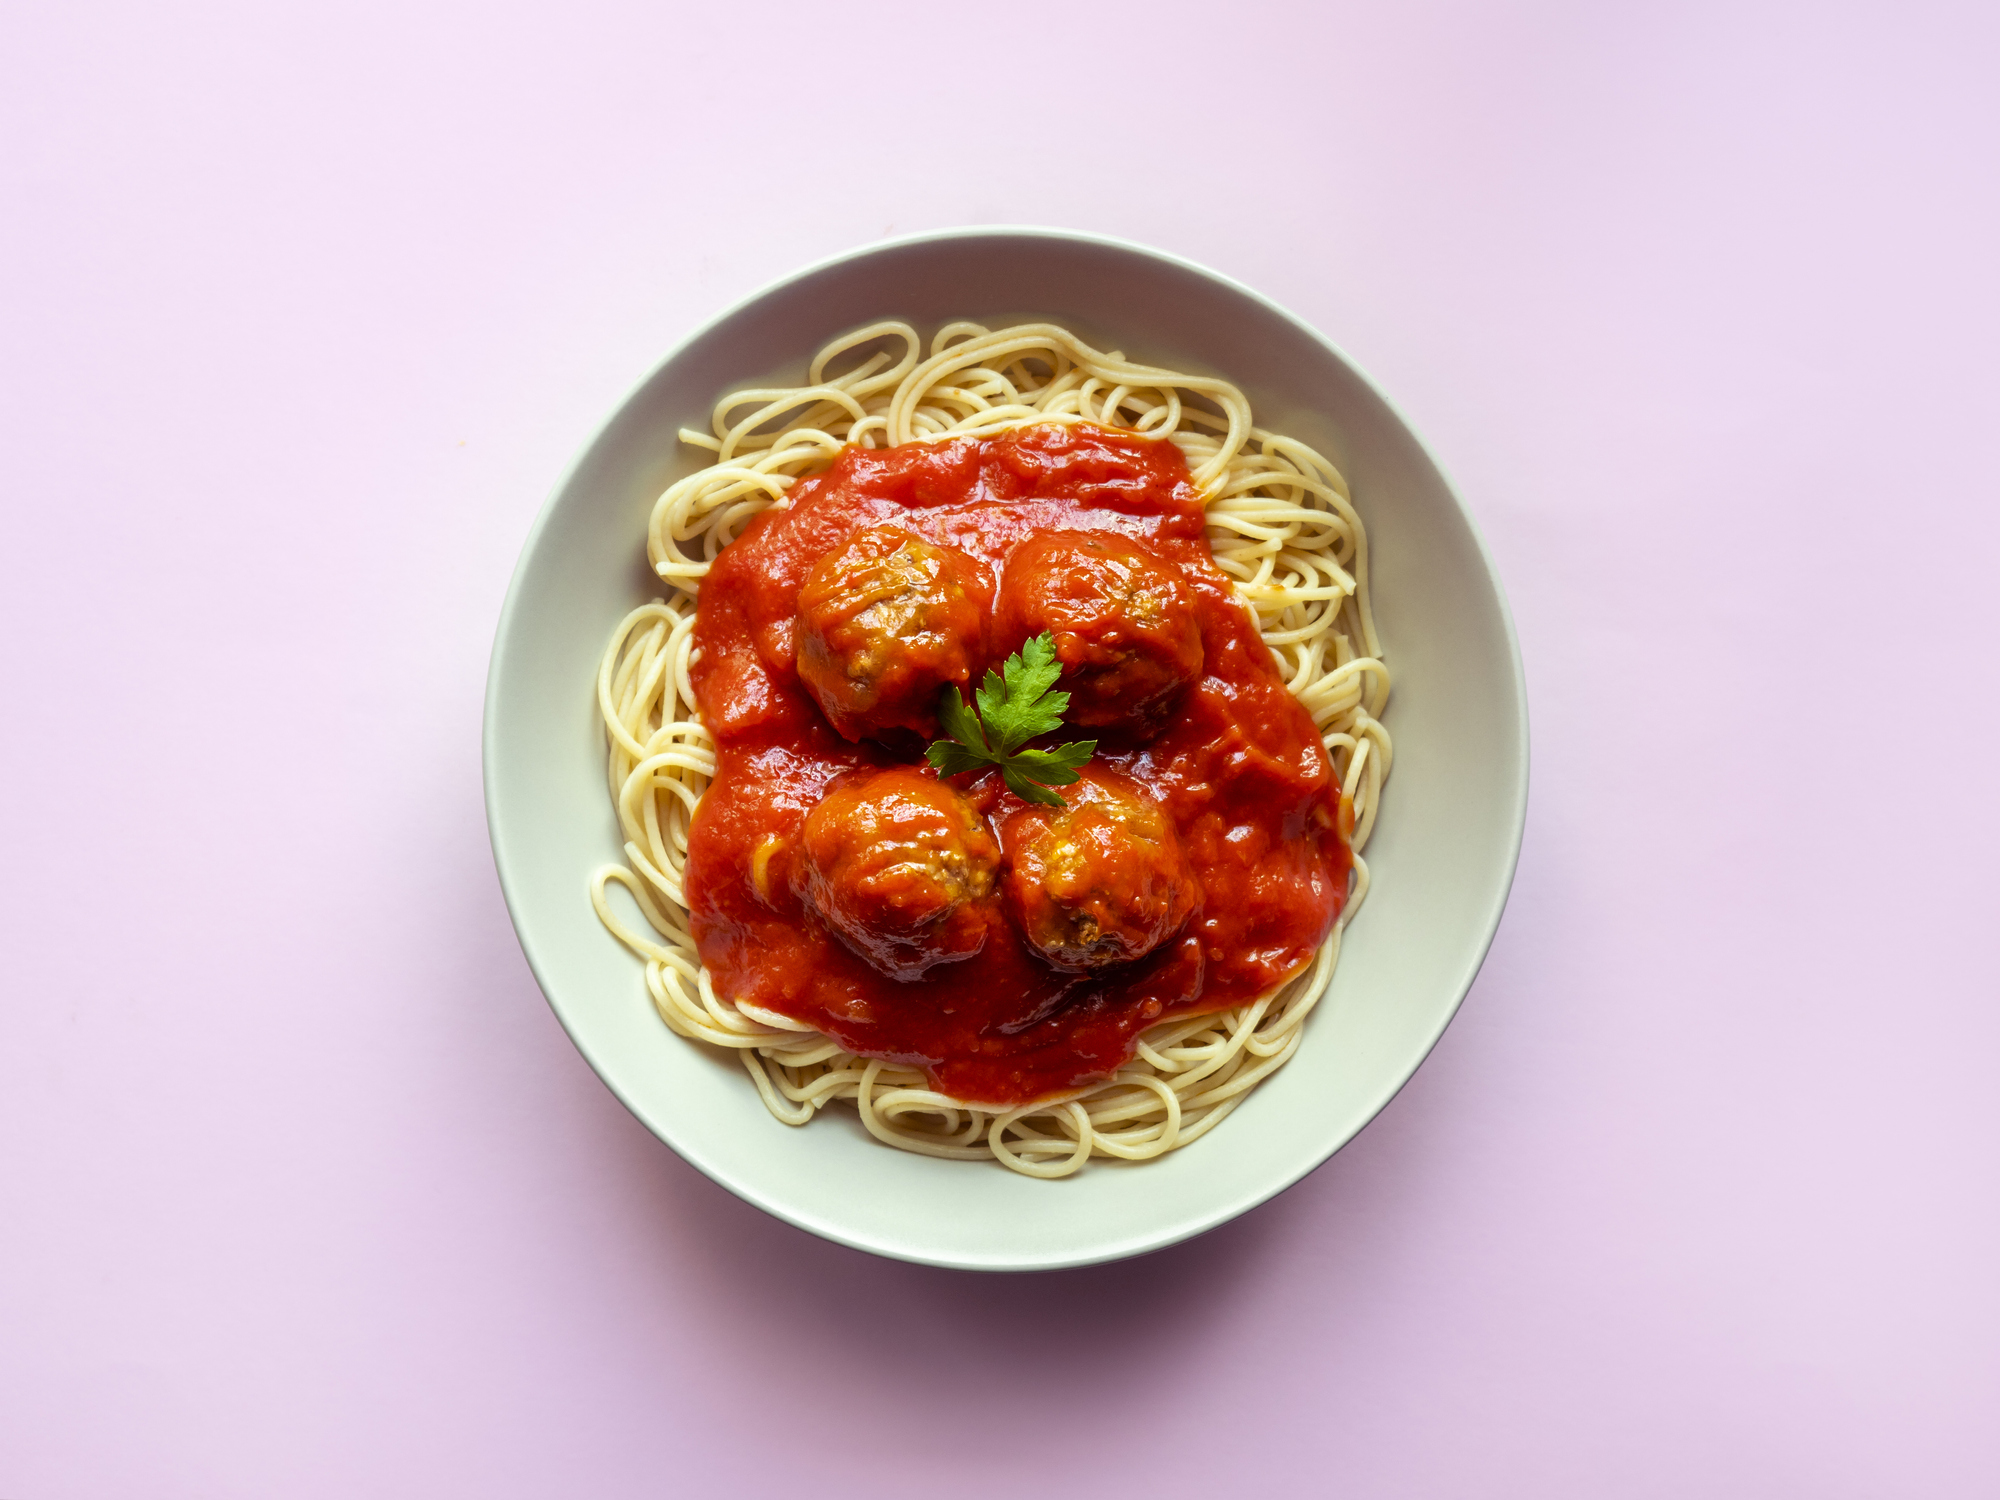 La calidad del producto, el modo de cocción y la salsa elegida, claves para preparar fideos como un italiano (Getty Images)